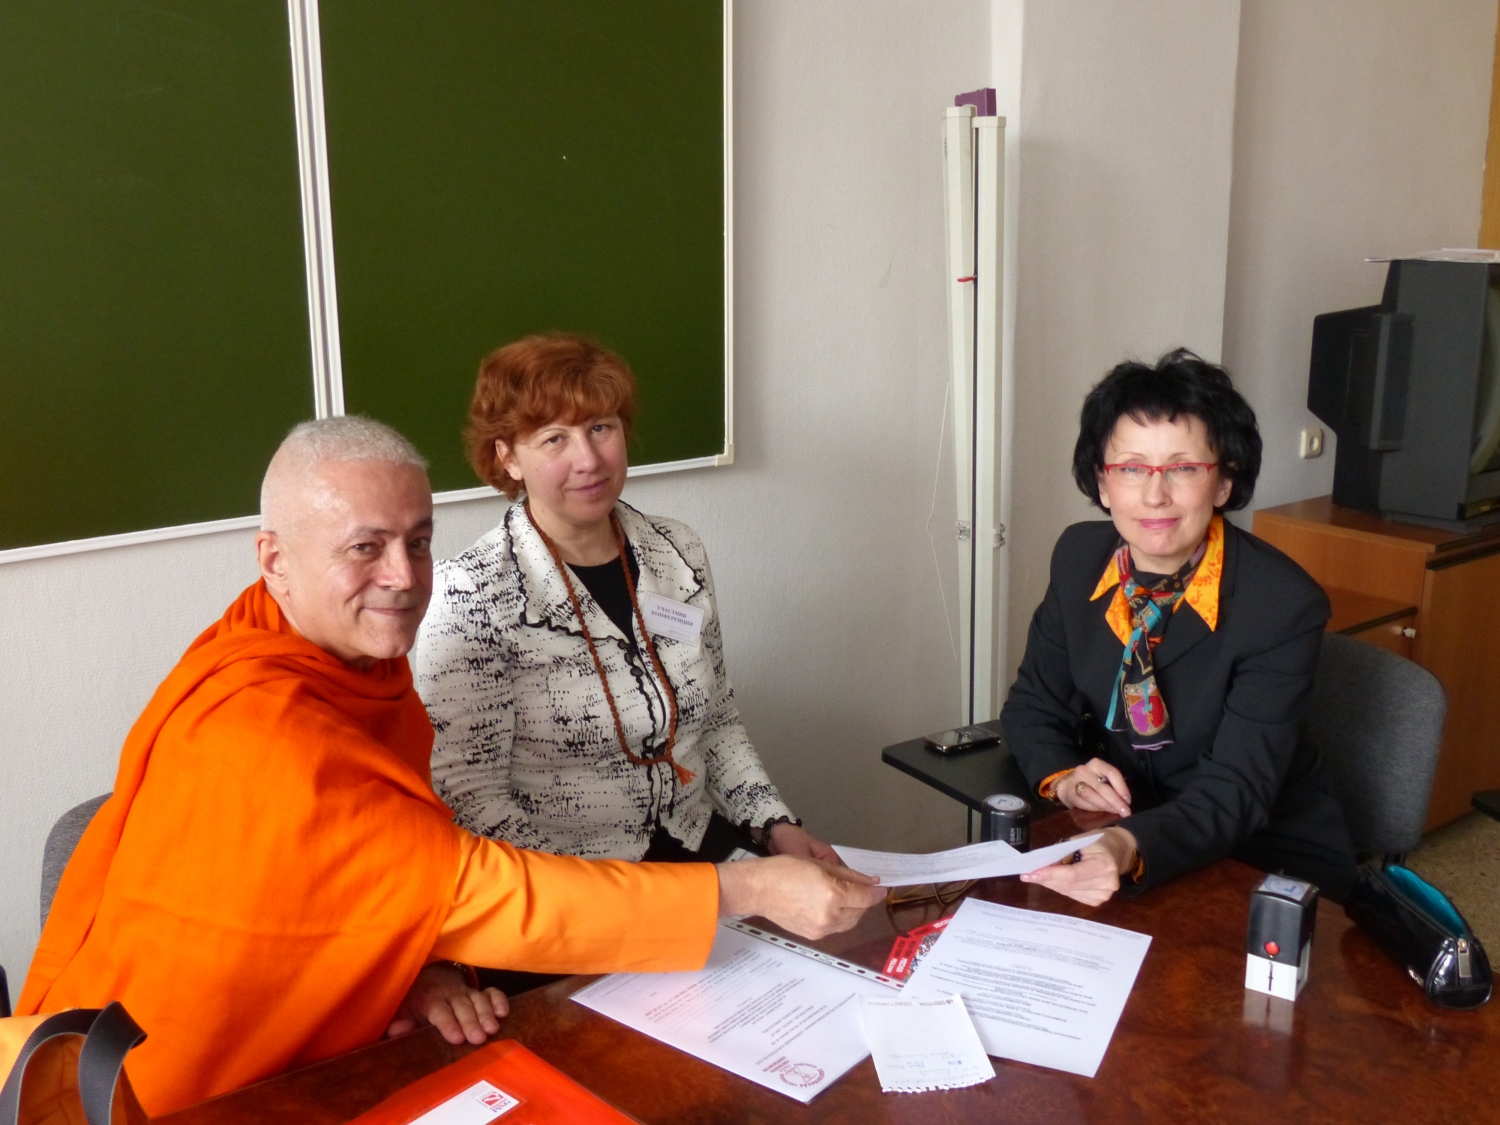 Encontro de Jorge Veiga e Castro, Gr. Mestre Internacional do Yoga, com a Direcção da Federação Russa do Yoga Clássico - Moscovo, Rússia - 2013, Abril (...)